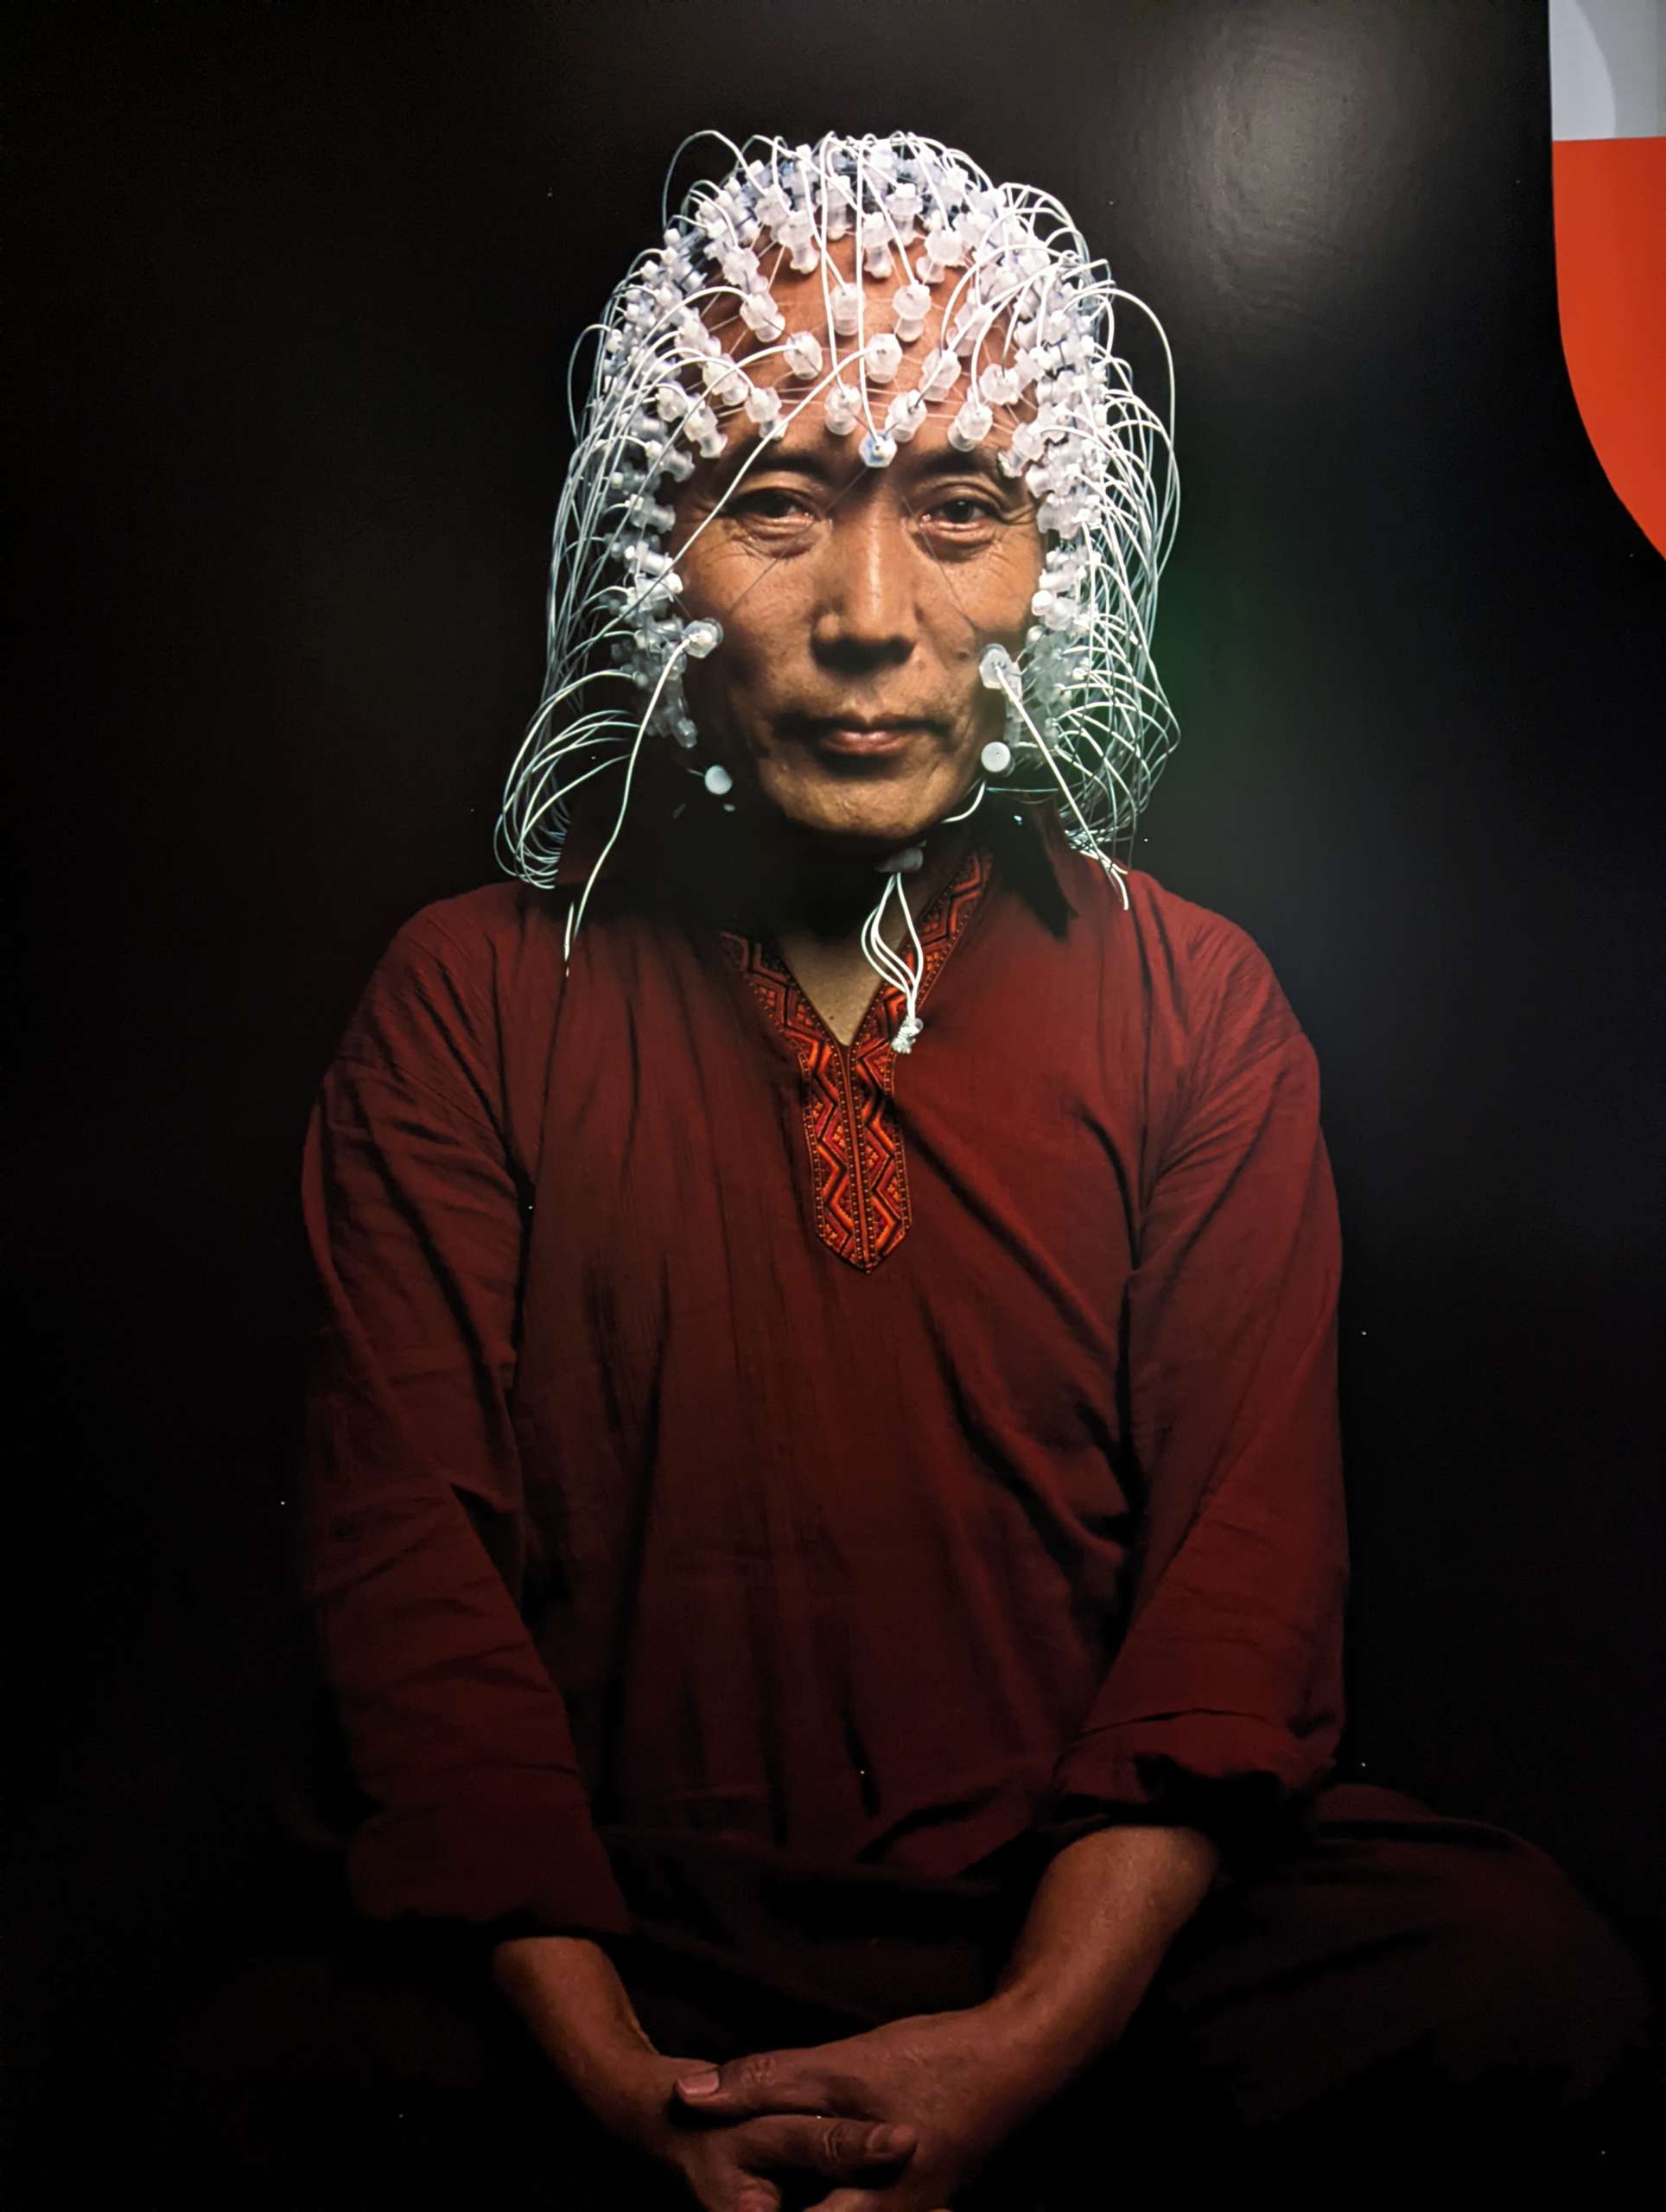 Buddhist monk wearing neural net